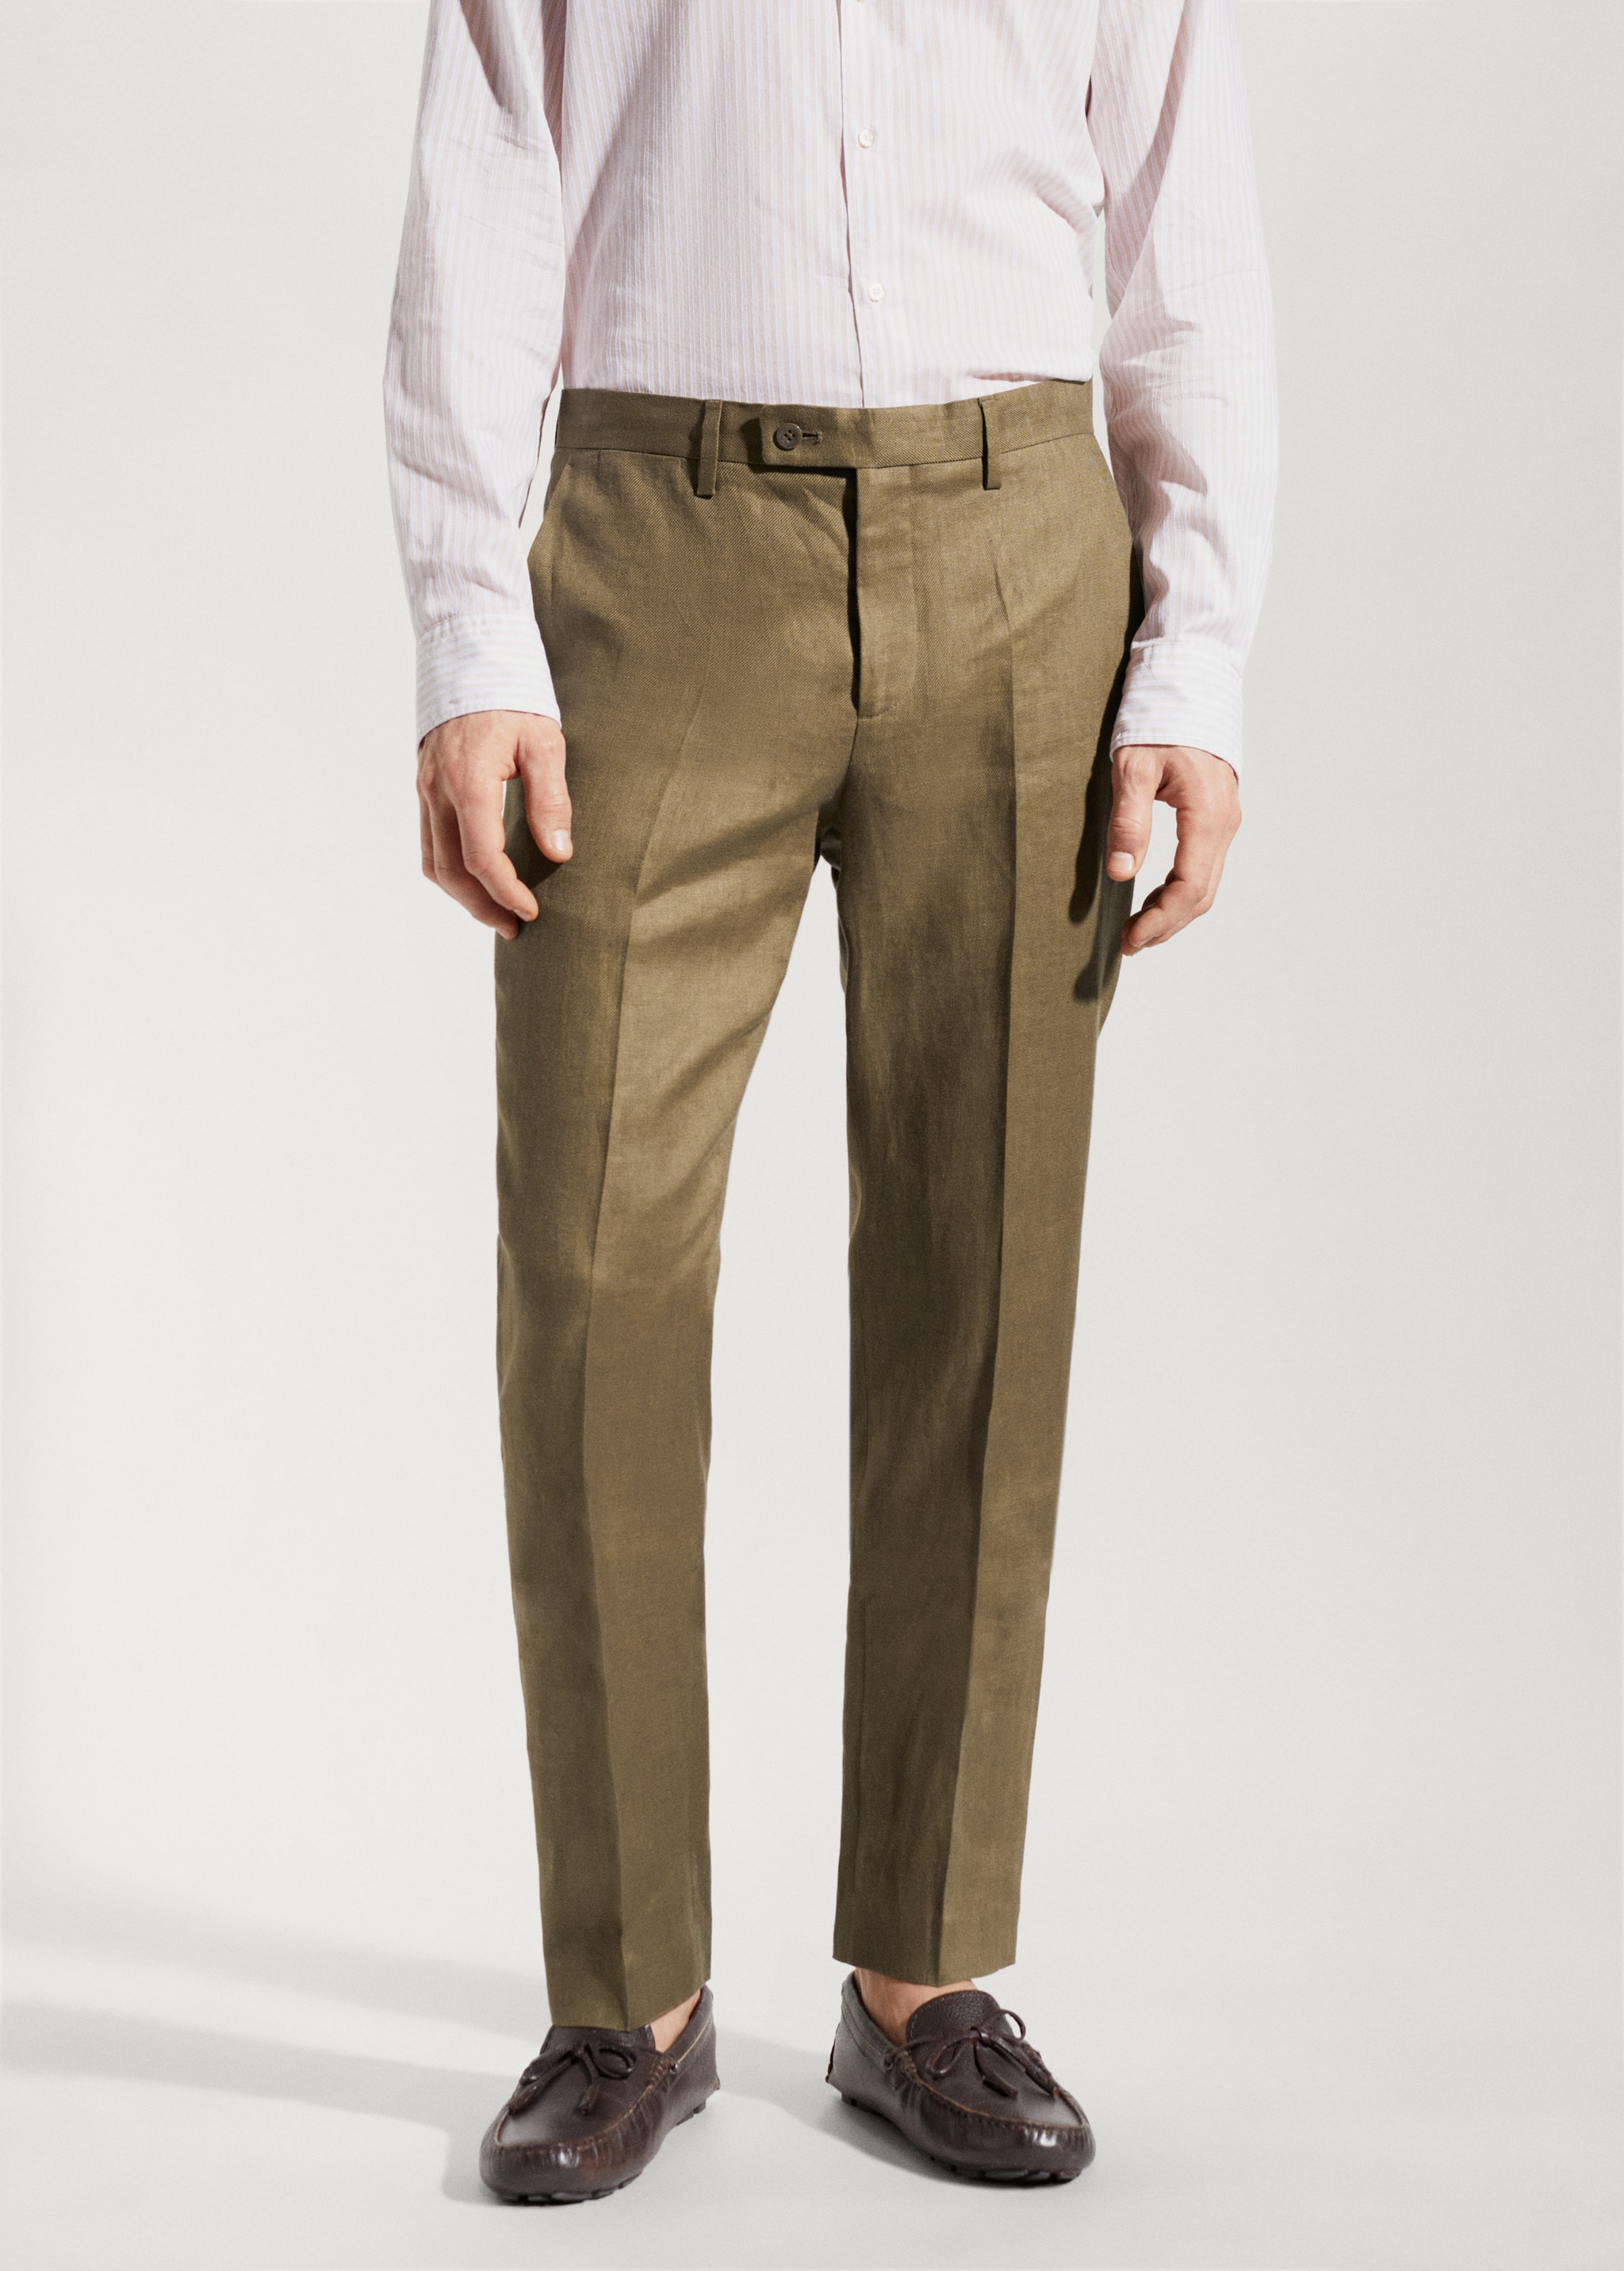 Pantalón traje 100% lino - Plano medio